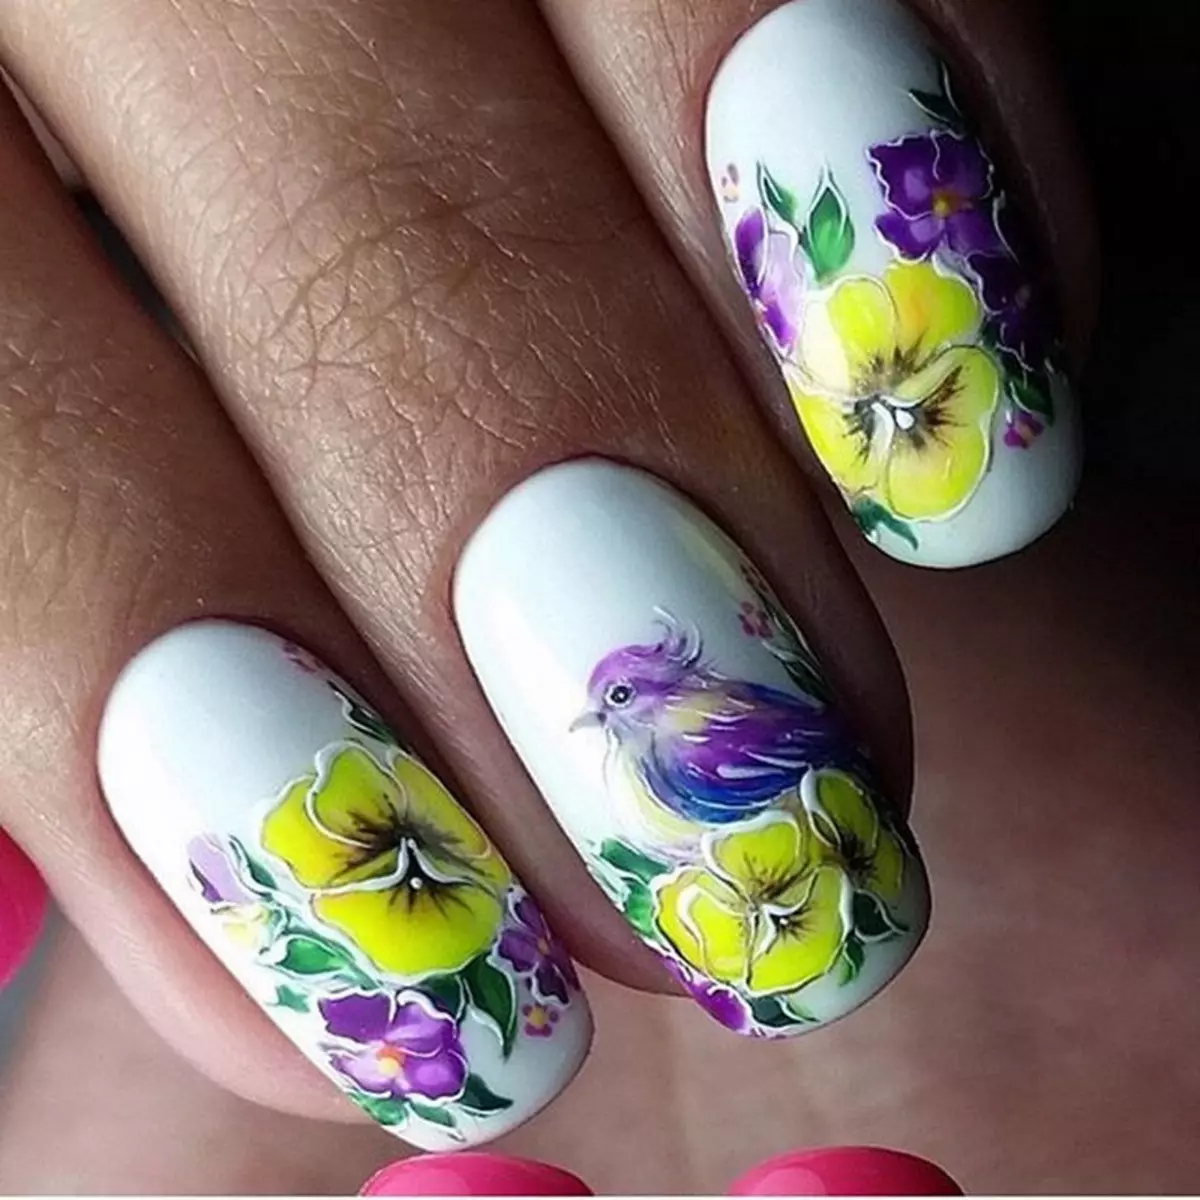 Flors en les ungles amb laca de gel (63 fotos): com dibuixar roses a pas gela-laca humida a pas? Idees de disseny de manicura 24259_47